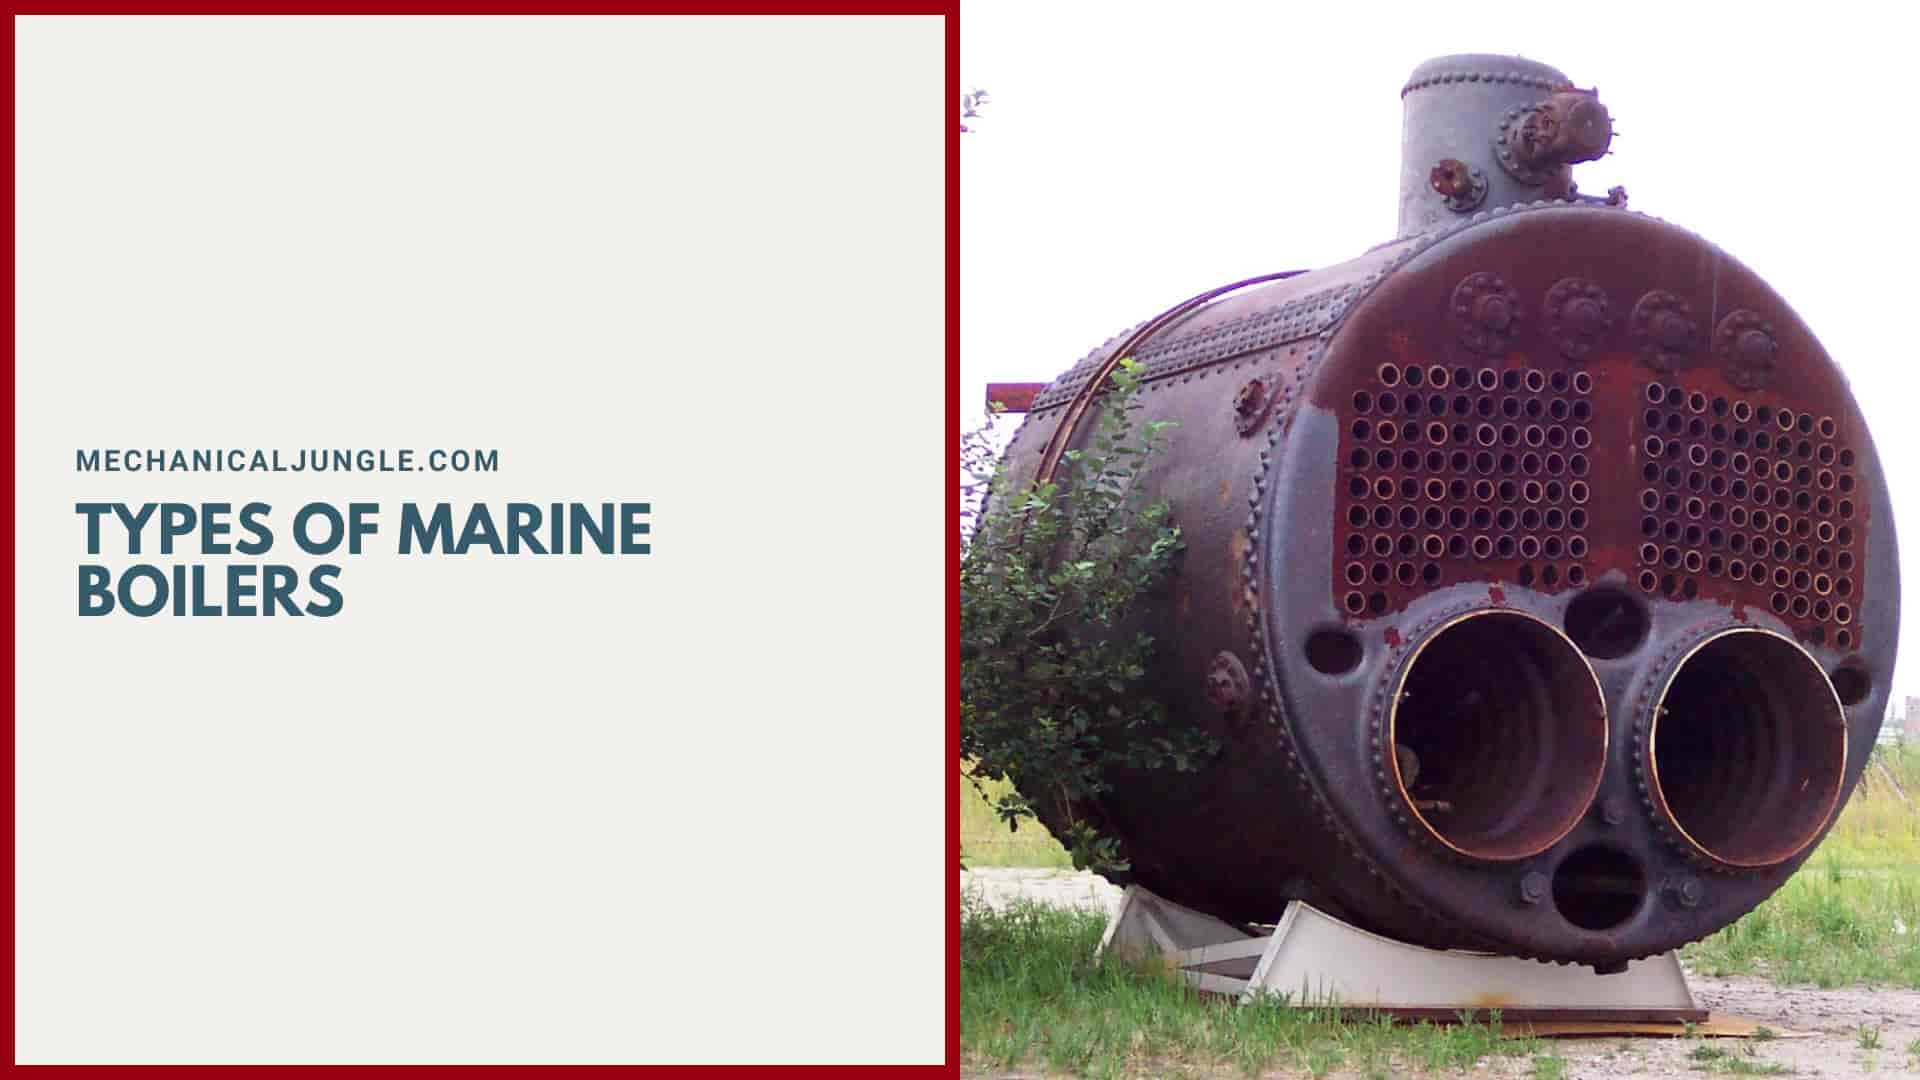 Types of Marine Boilers